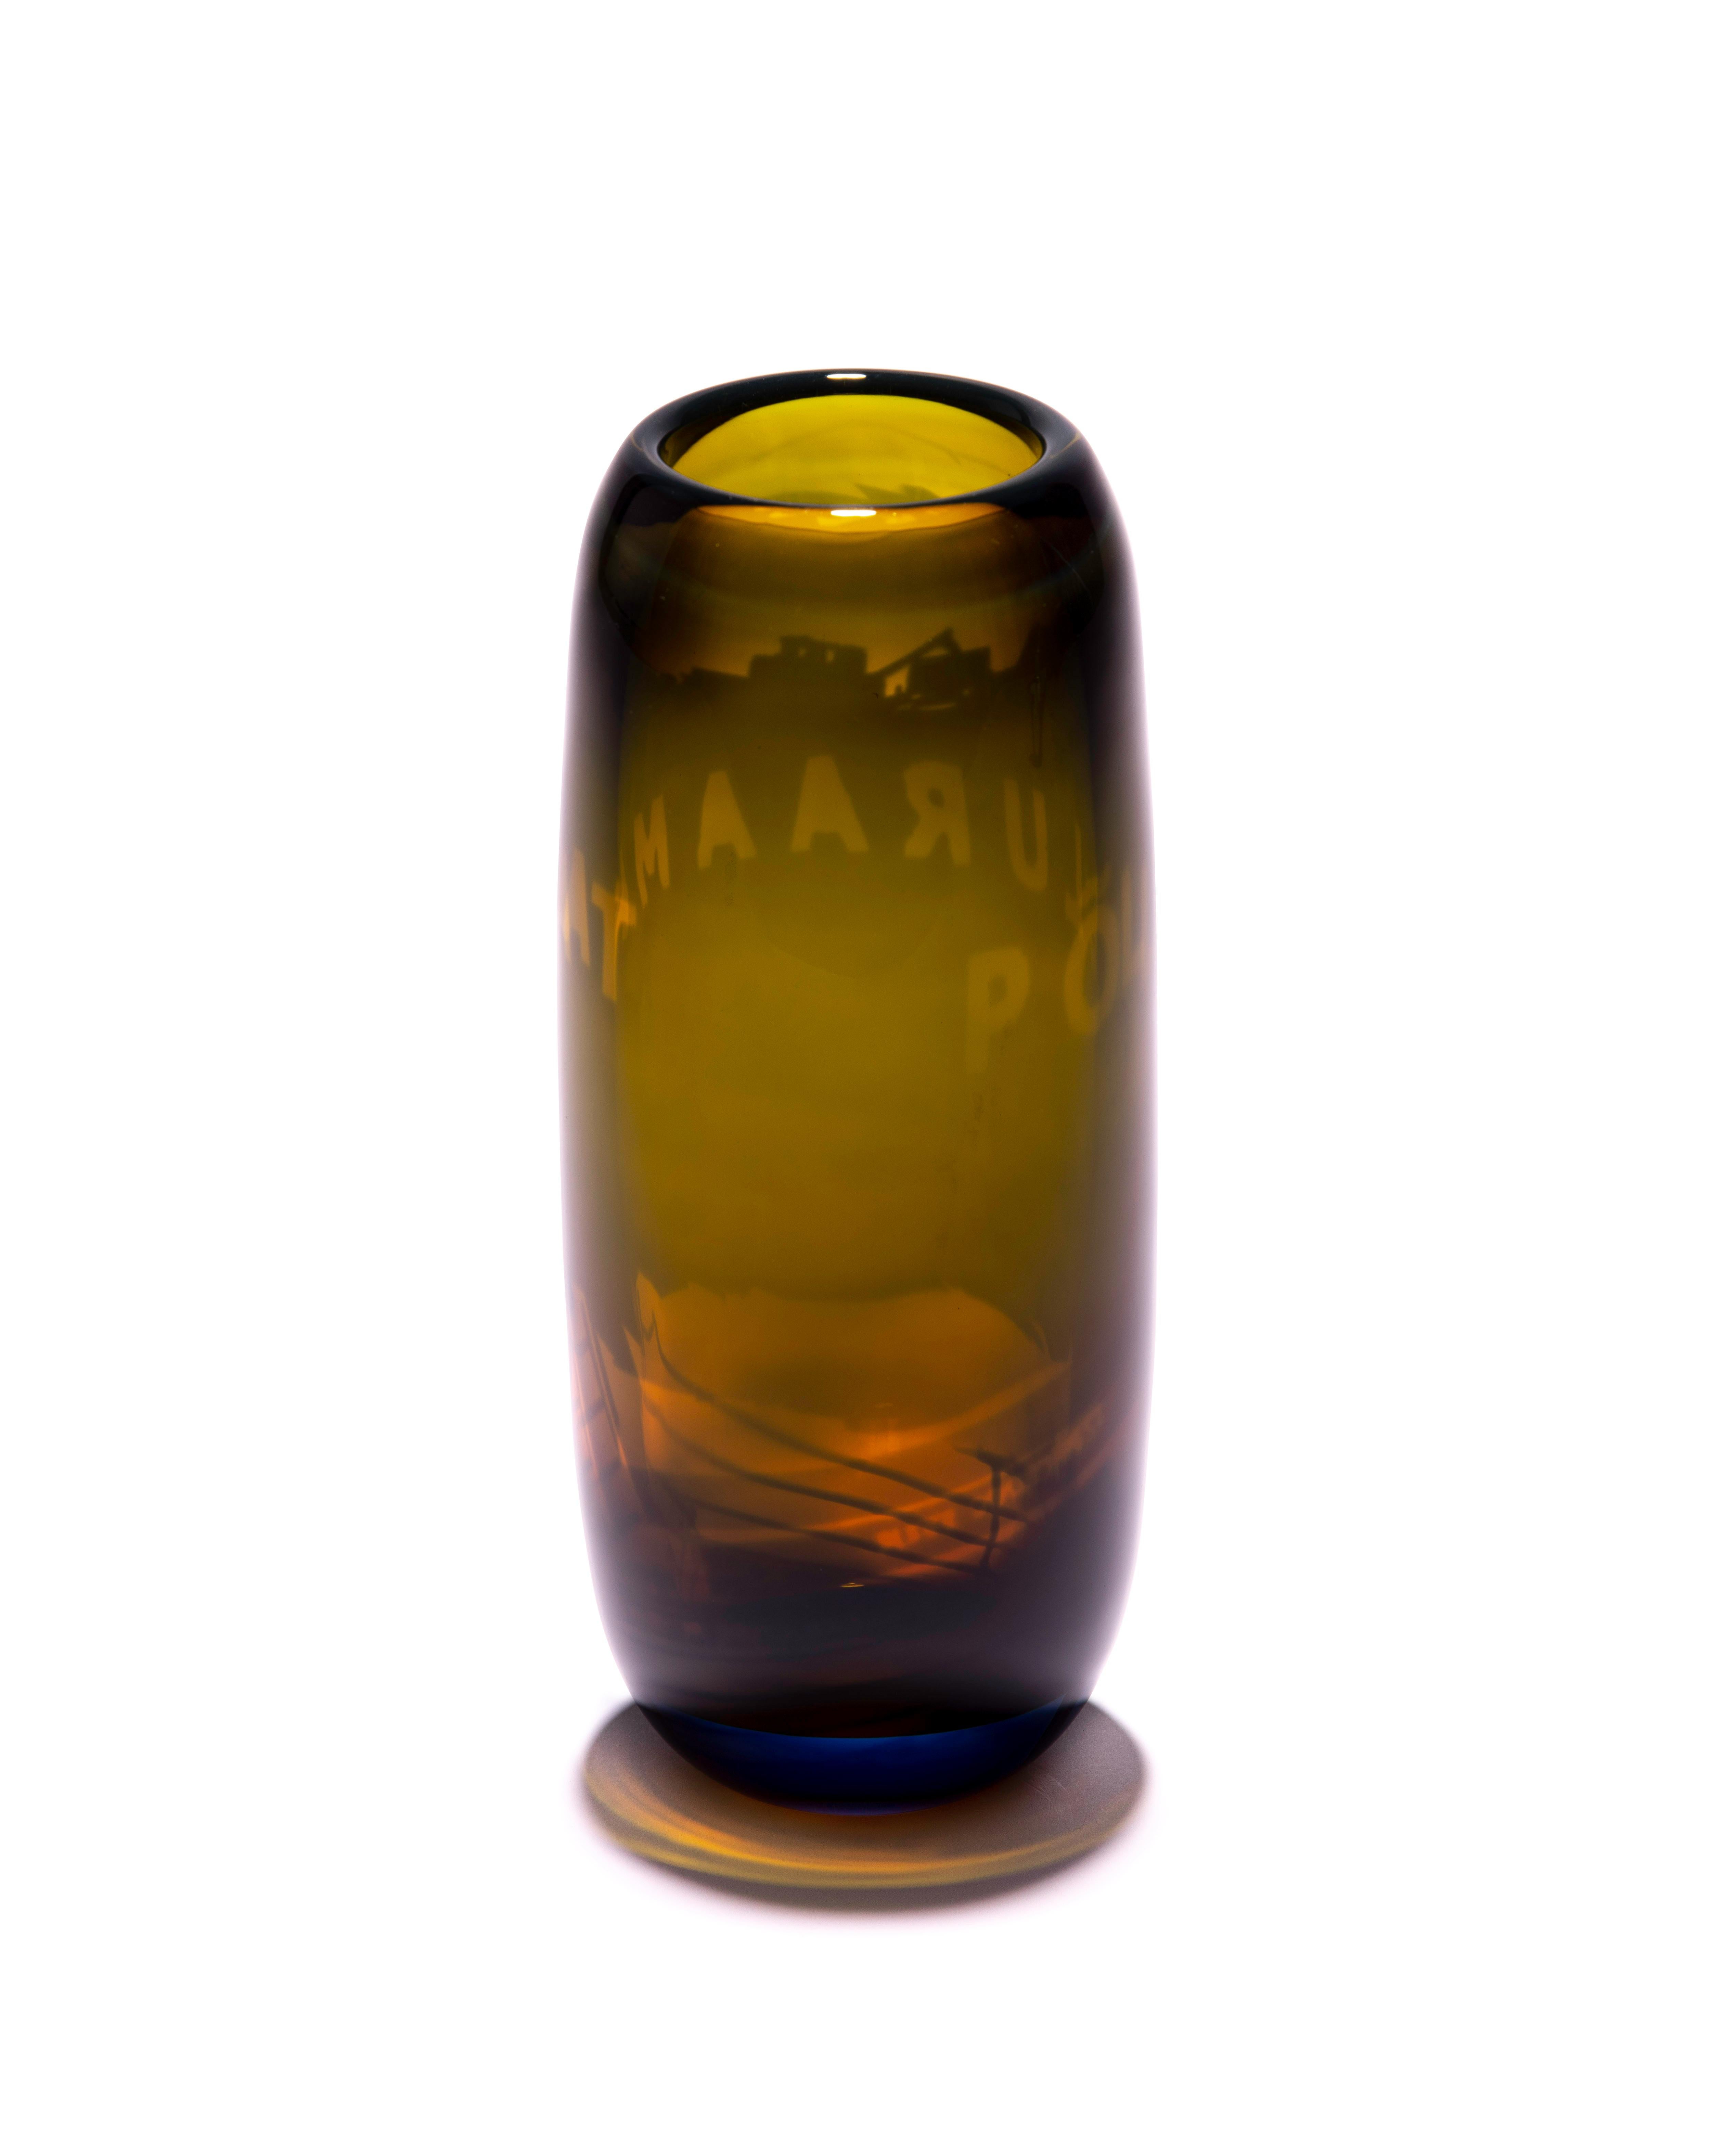 Einzigartige braune Glasvase Harvest Graal von Tiina Sarapu,
2018
Abmessungen: H 30 cm
MATERIALIEN: Glas

Glas steht in meinen Werken für die Welt zwischen undurchsichtig und durchscheinend, sichtbar und unsichtbar, materiell und immateriell,